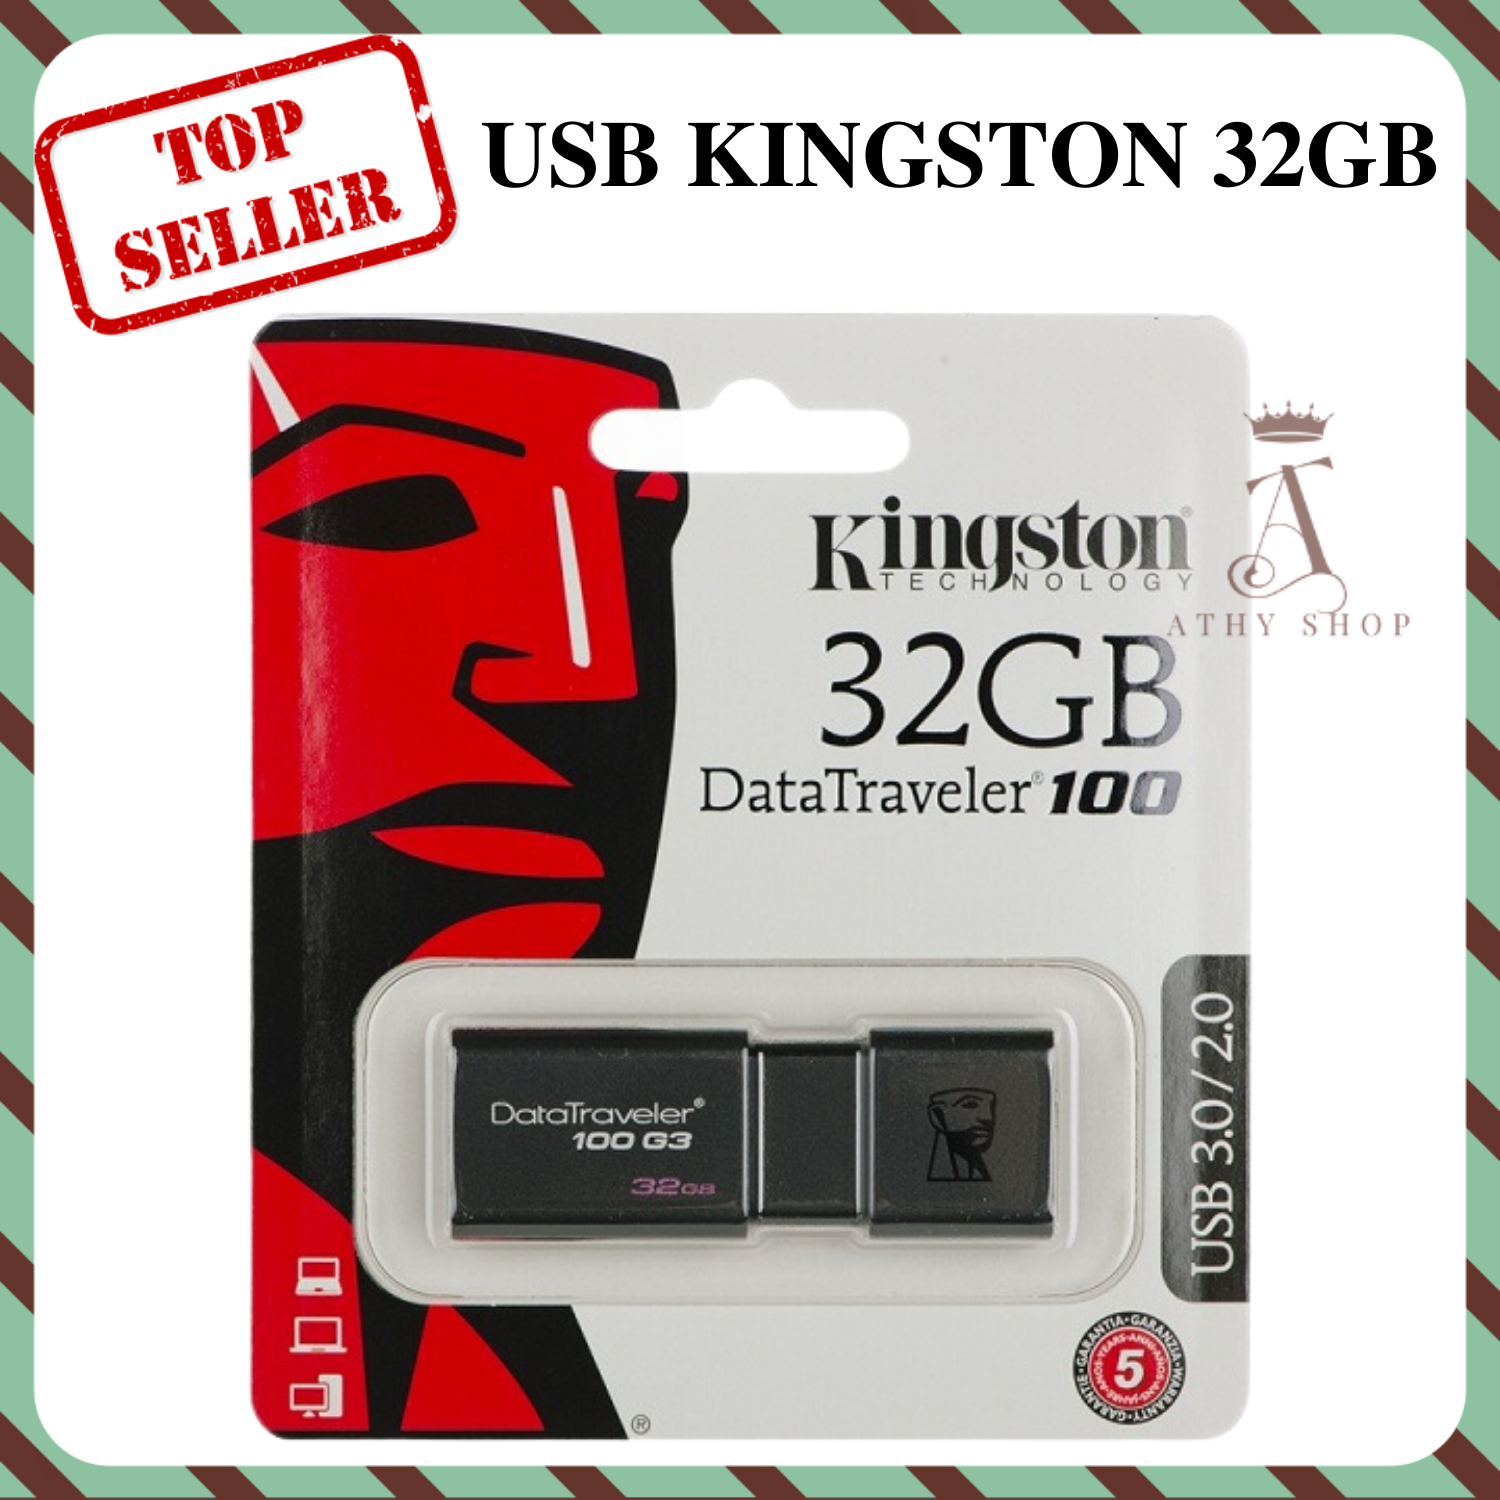 USB KINGSTON 32GB LOẠI XỊN USB DT101 cao cấp siêu xịn 32 GB gygabye giá rẻ USB dung lượng lớn thiết bị lưu trữ chất lượng hàng siêu bền thiết kế đẹp độc lạ chính hãng đẳng cấp nhôm kim loại U S B 32G tiện lợi ATHY SHOP